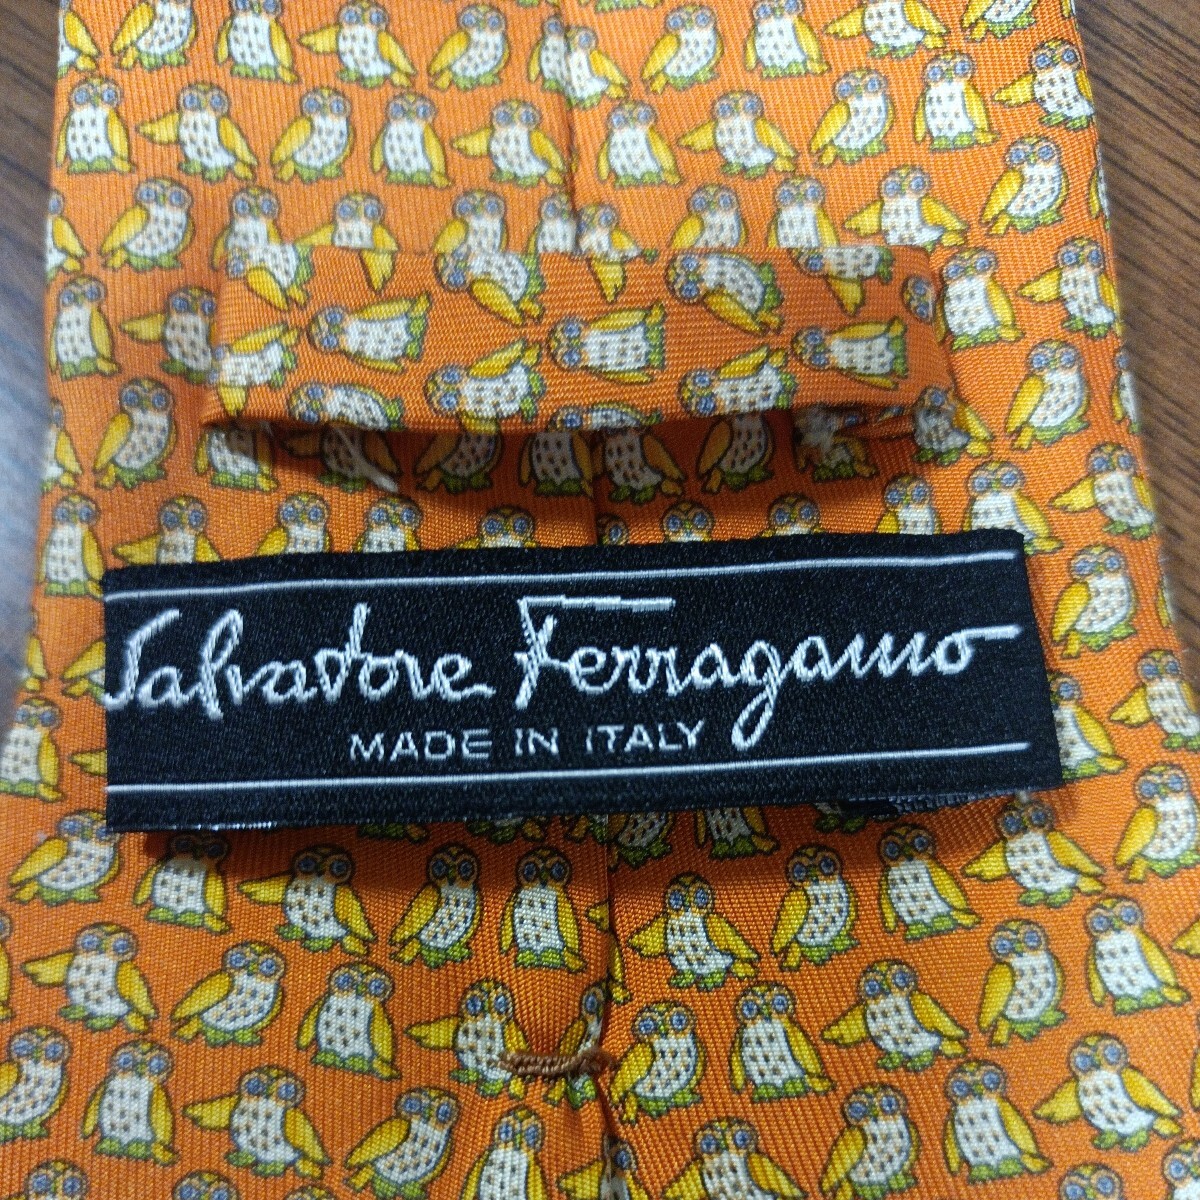 Salvatore Ferragamoサルバトーレフェラガモ ネクタイ 総柄 フクロウ柄 オレンジ色ベース イタリア製 MADE IN ITALY ラグジュアリーの画像3